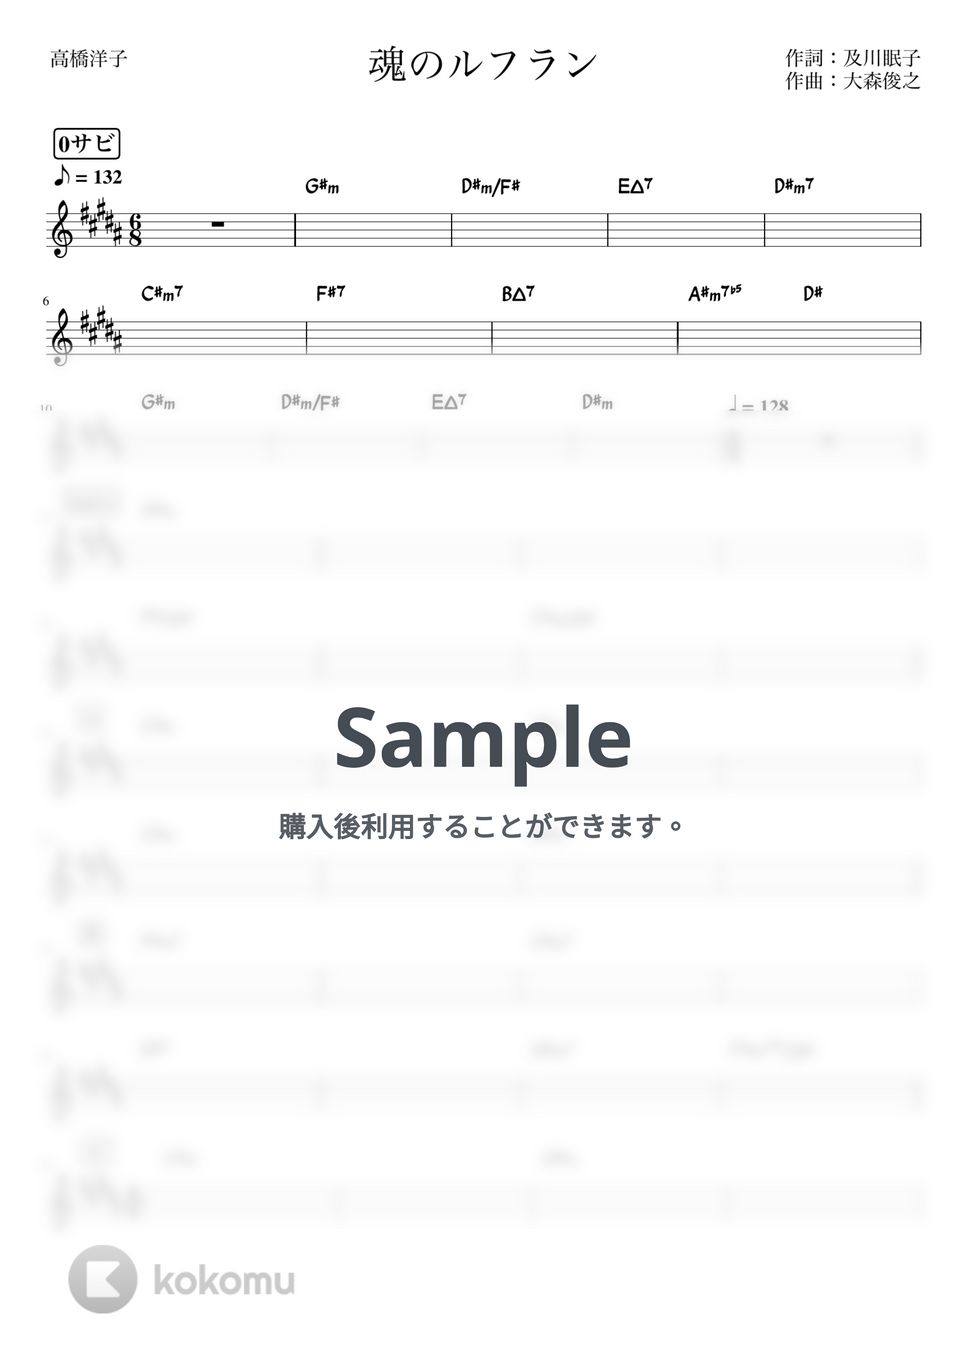 高橋洋子 - 魂のルフラン (バンド用コード譜) by 箱譜屋